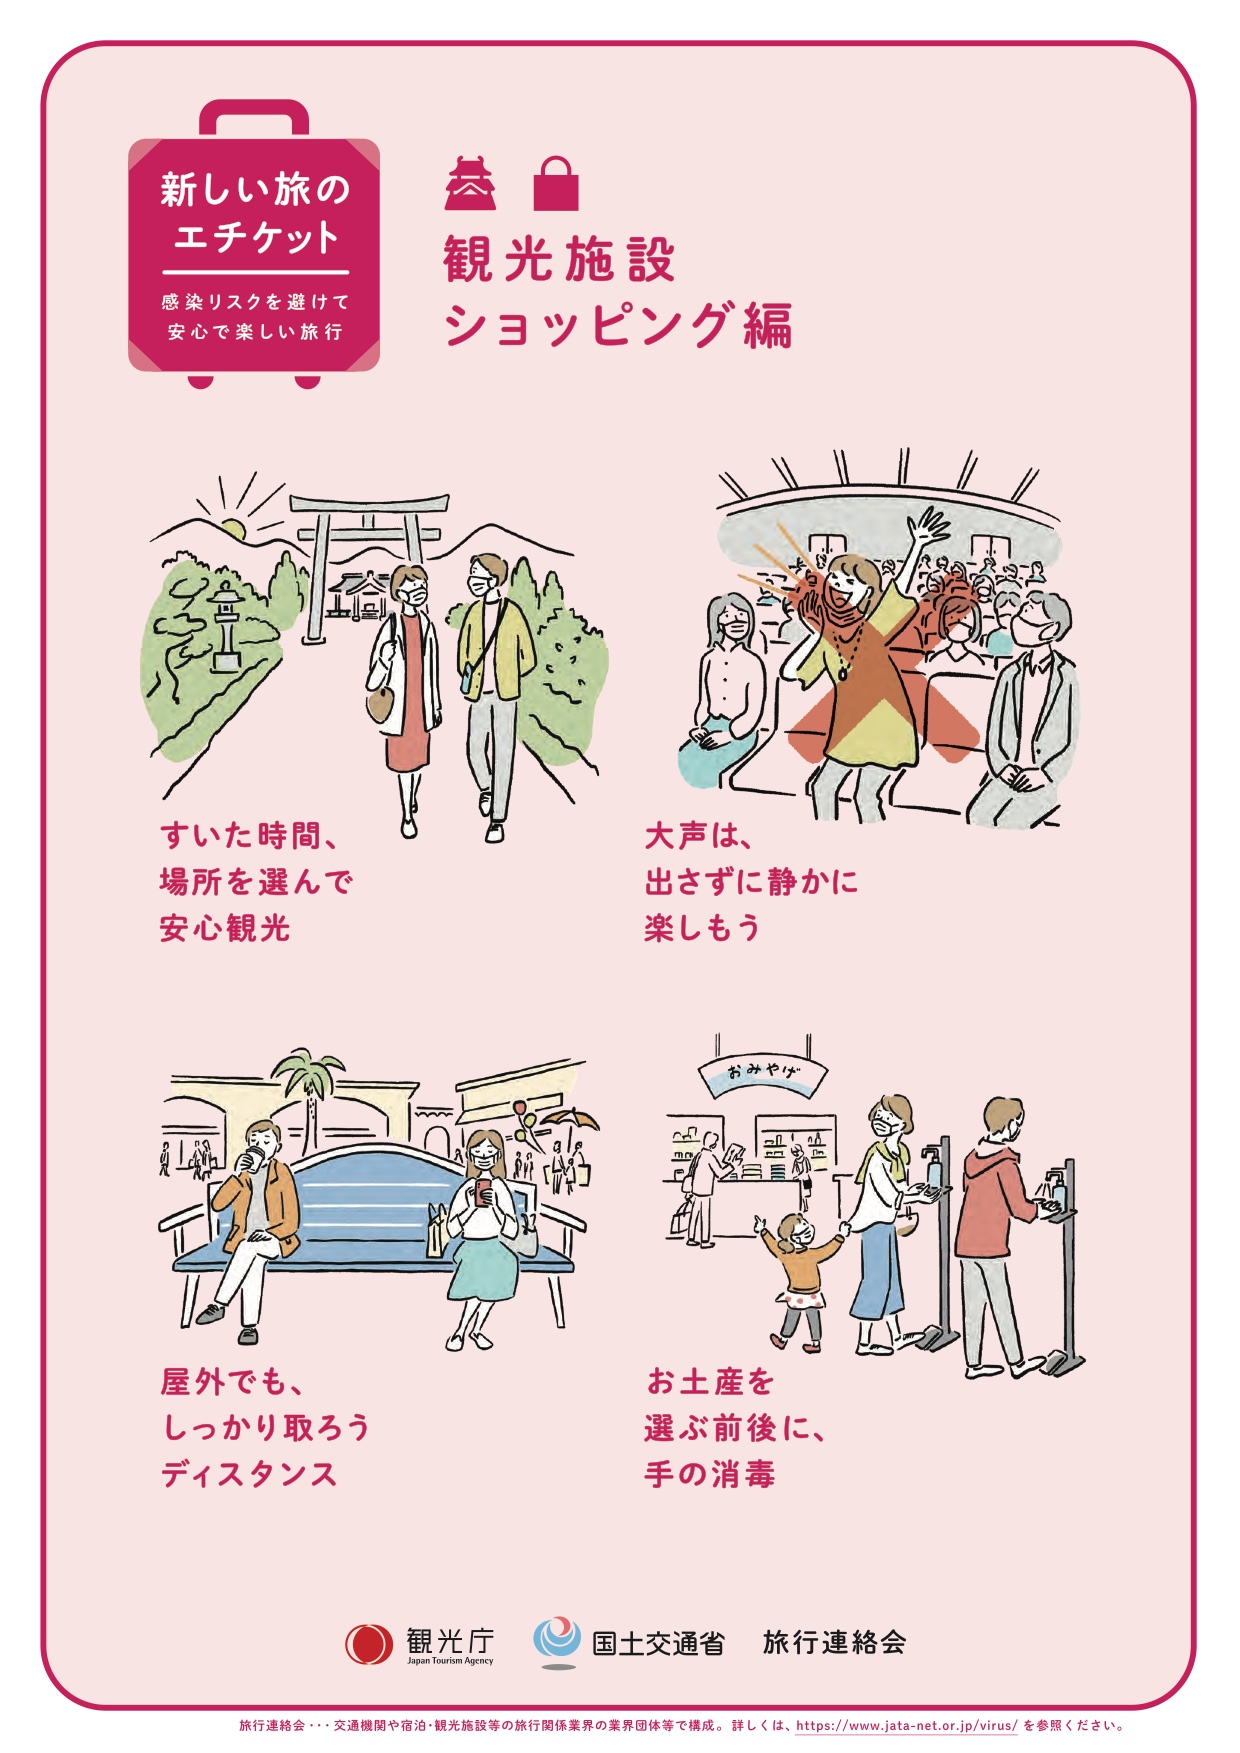 Veranstaltungen sollte man in Ruhe geniessen, Sehenswürdigkeiten während nicht hektischen Zeiten besuchen und auch in Aussenbereichen gilt es, Abstand zu wahren. | Tourismusbehörde Japan